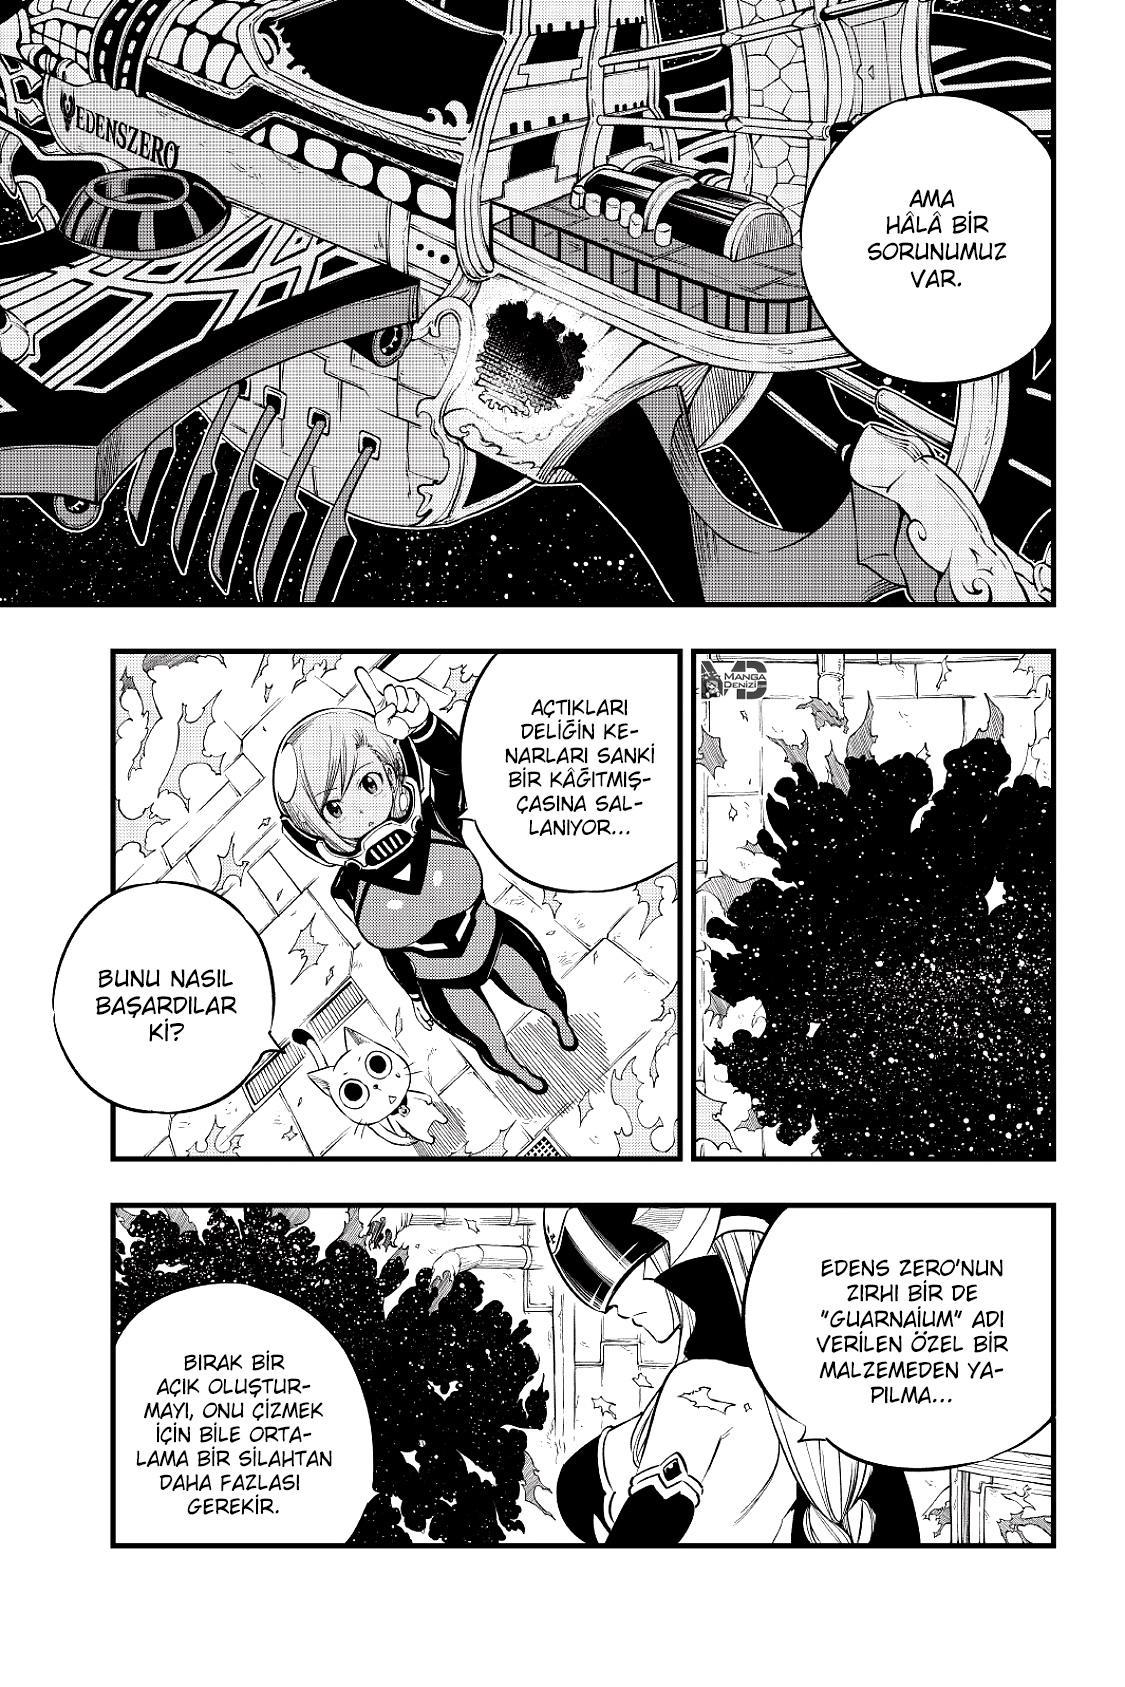 Eden's Zero mangasının 072 bölümünün 4. sayfasını okuyorsunuz.